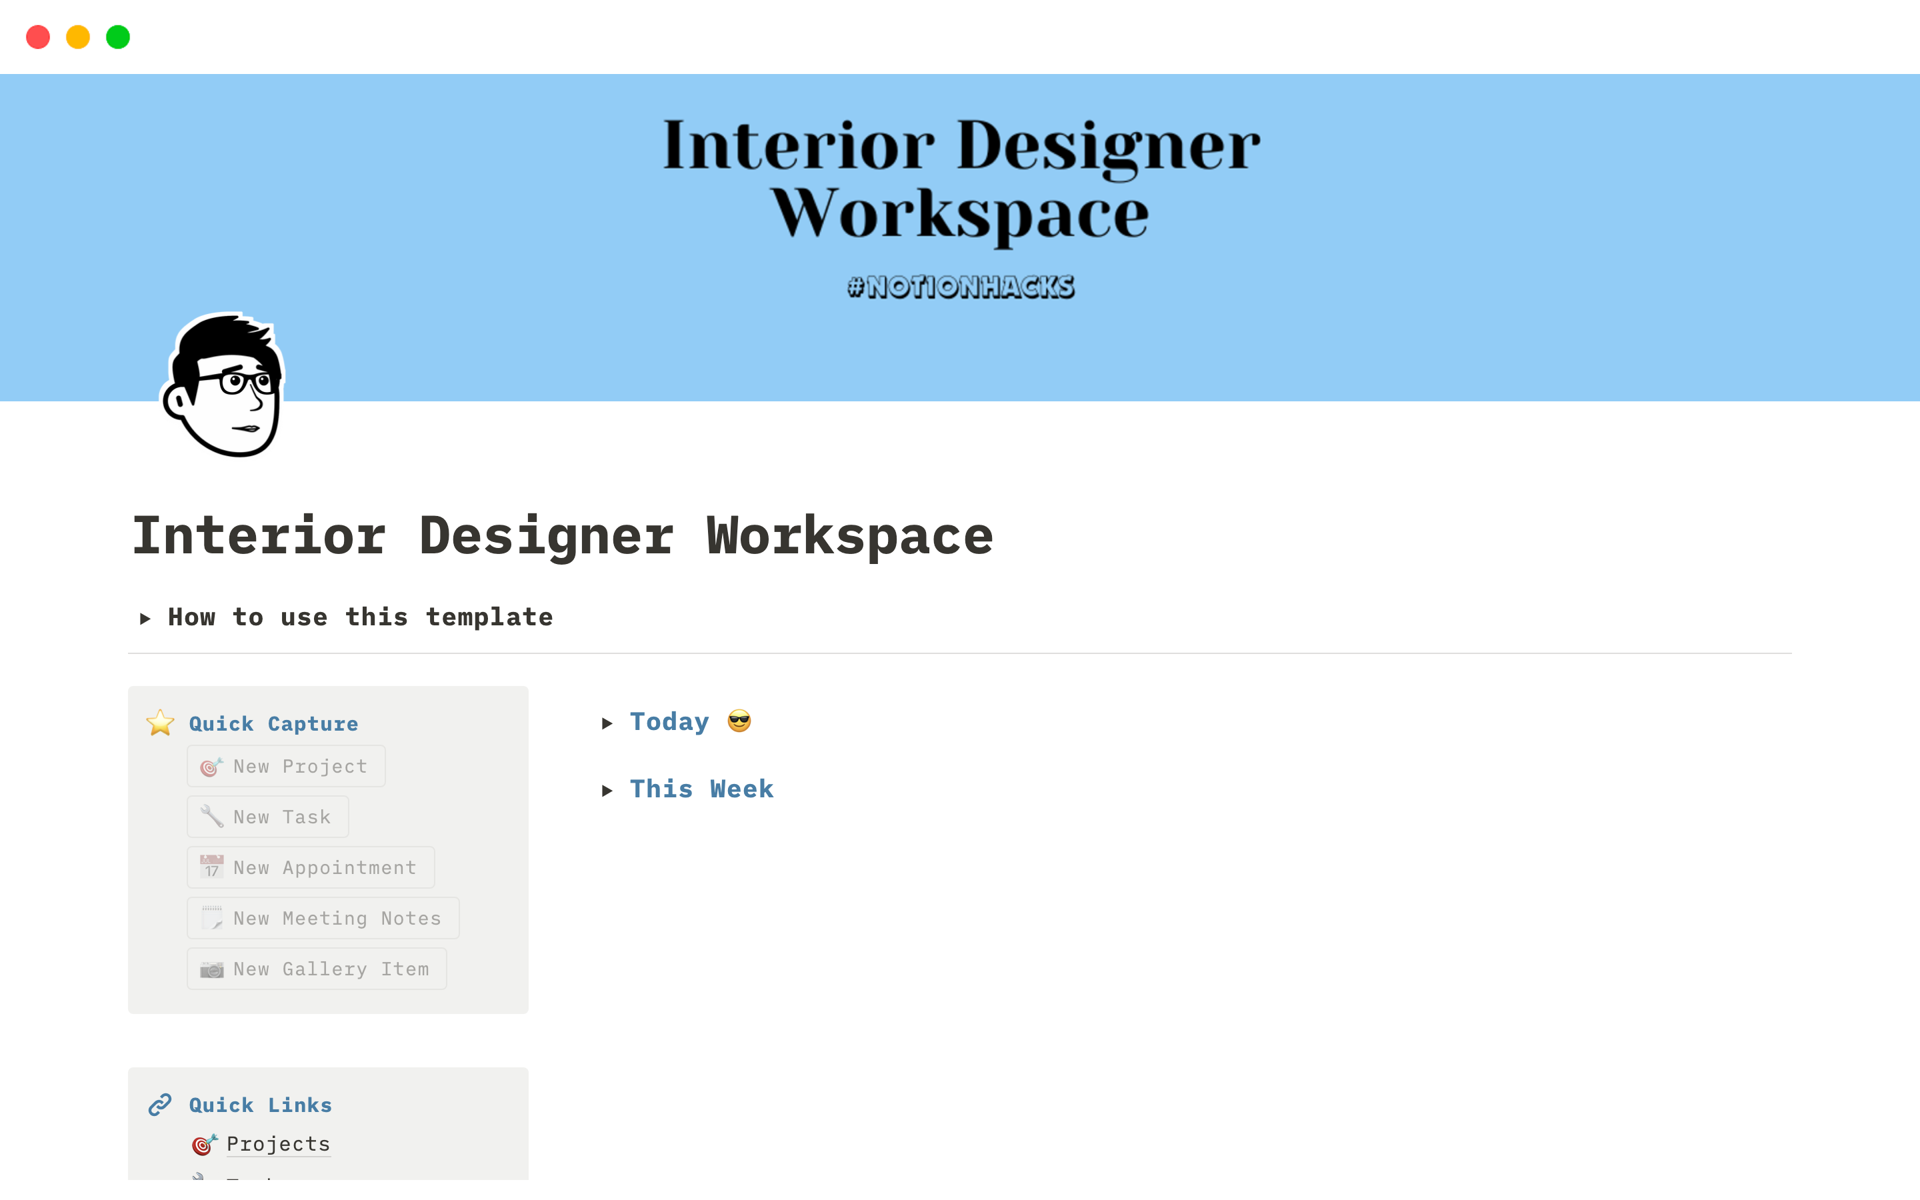 Aperçu du modèle de Interior Designer Workspace